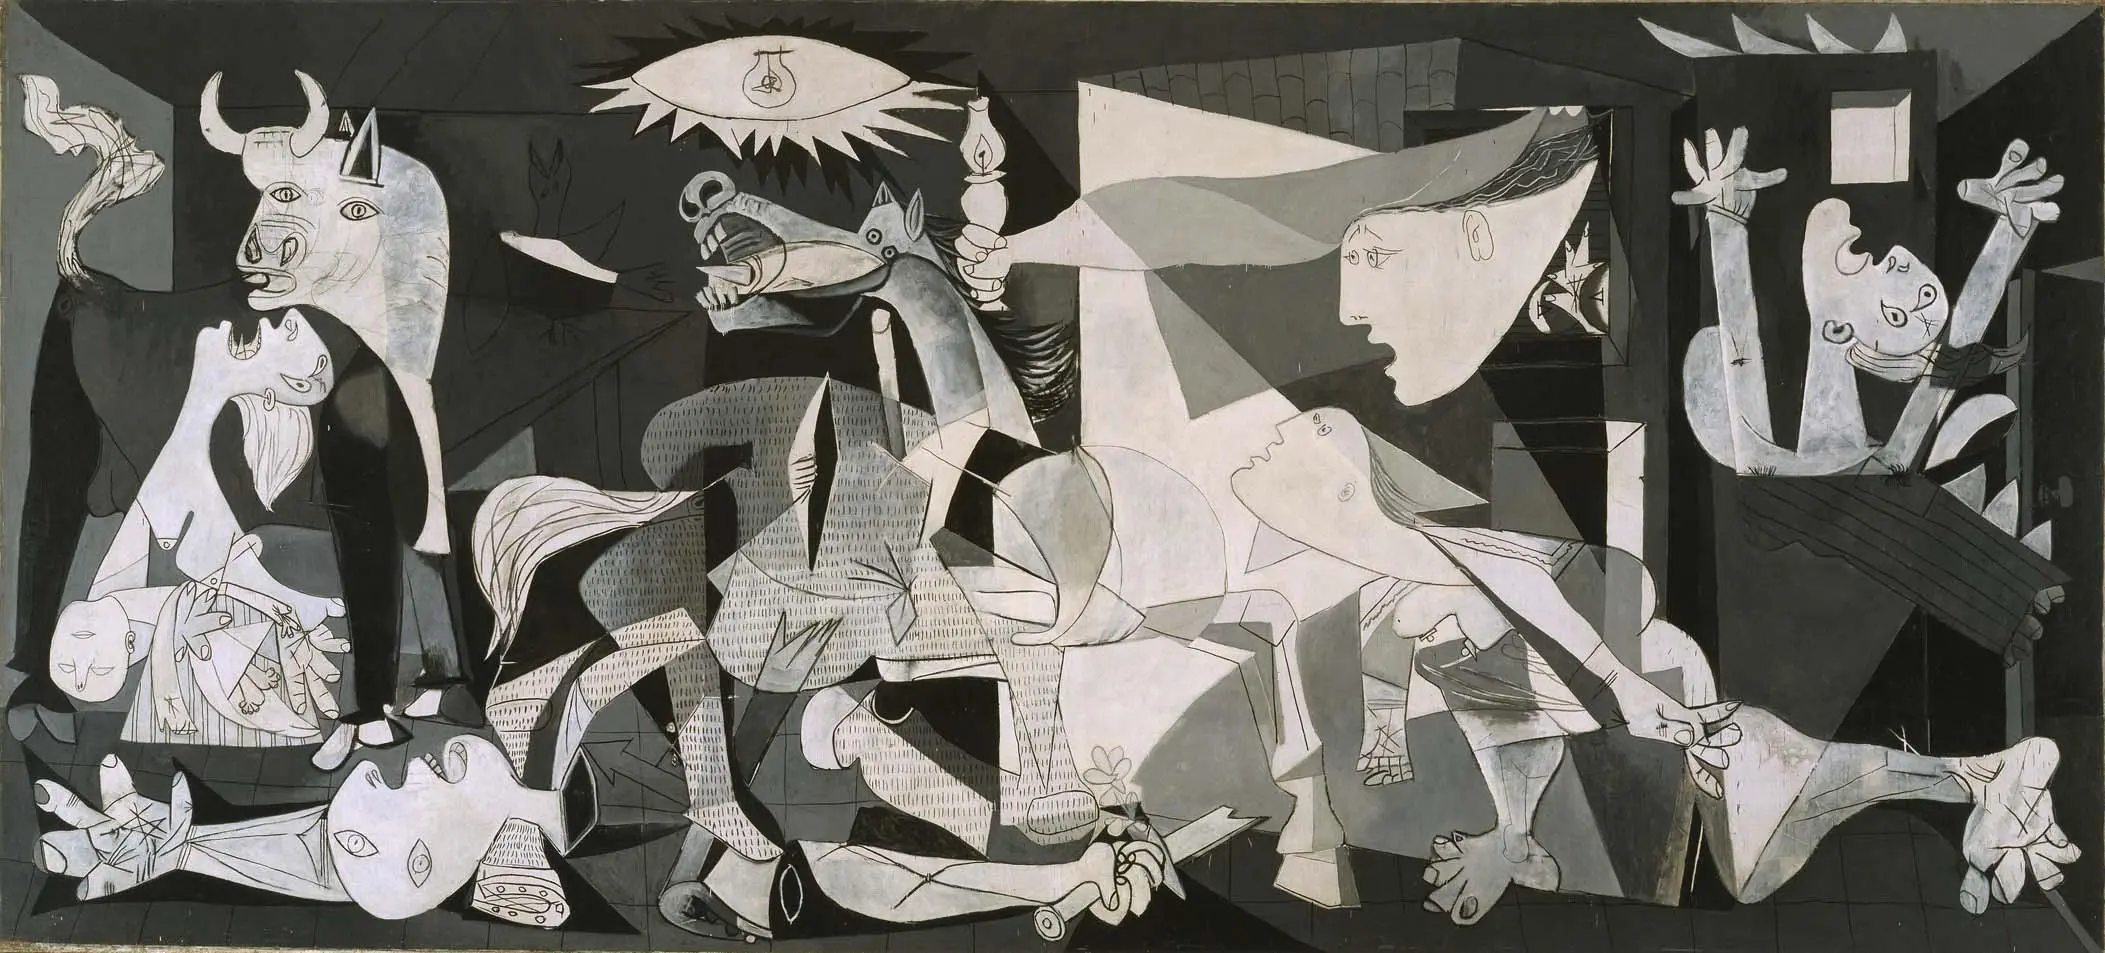 pablo picasso obras abstractas violin en el cafe - Cómo se llama este cuadro de Pablo Picasso